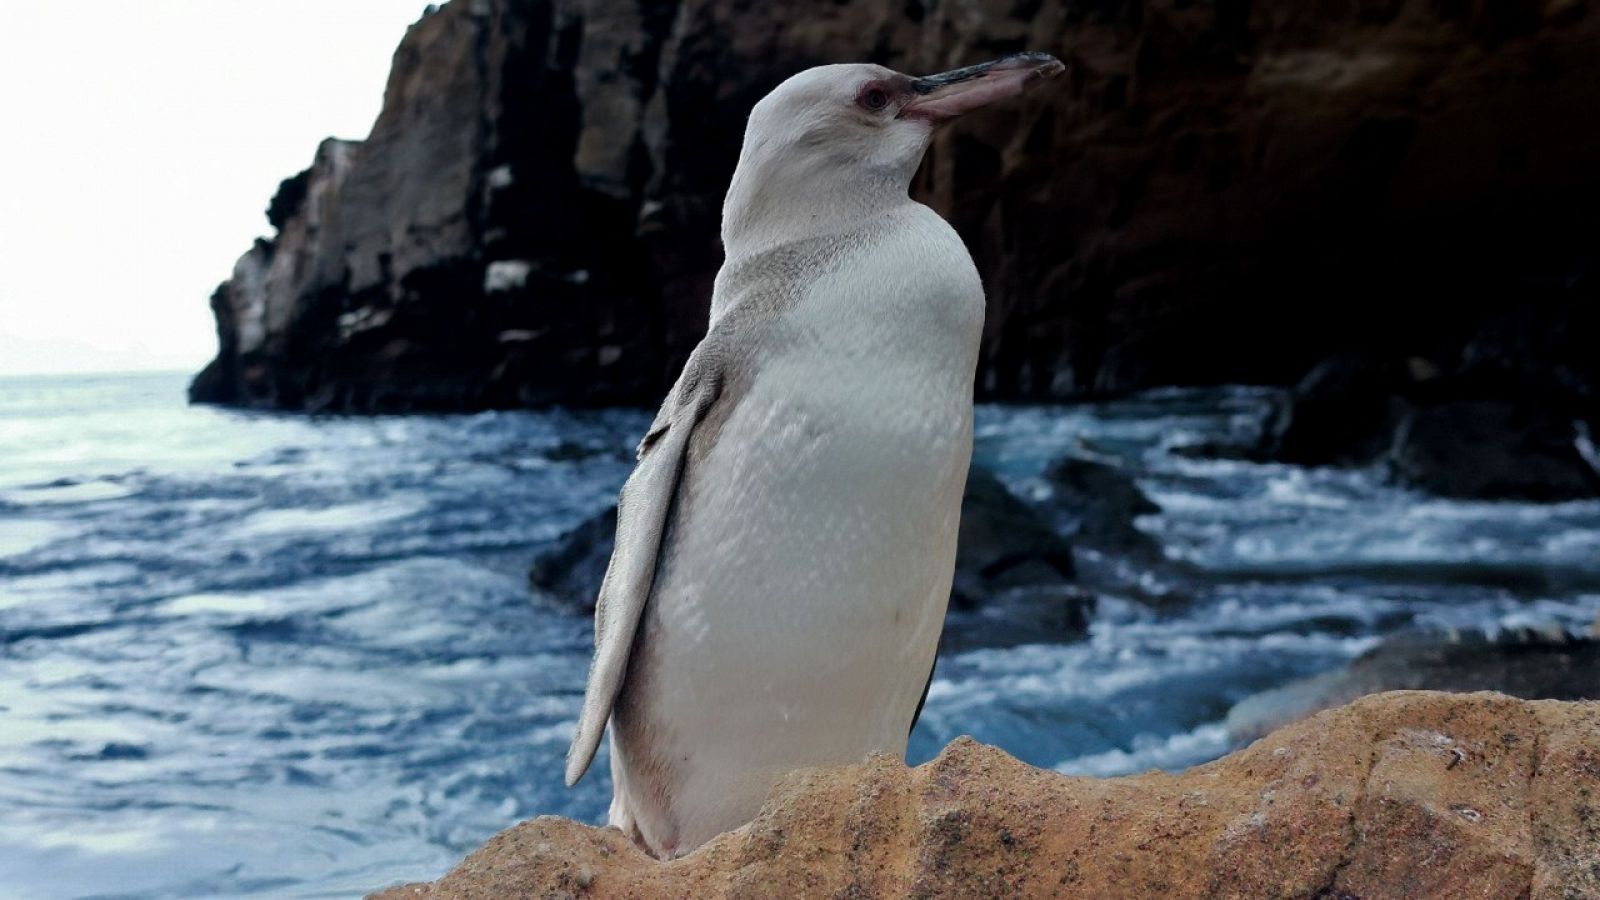 Una imagen del pingüino con aparente síndrome de leucismo avistado en una de las islas Galápagos.